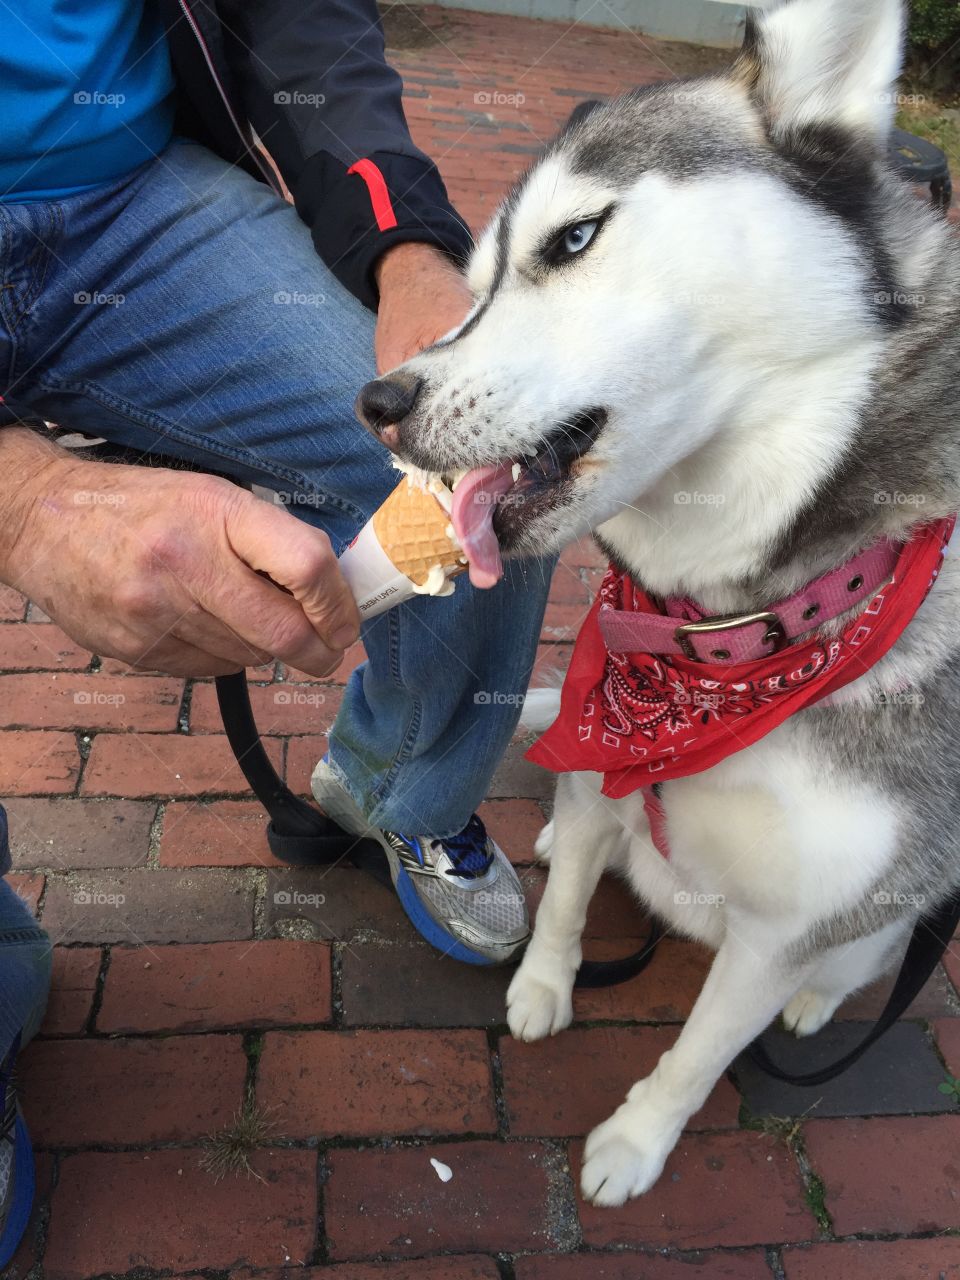 Husky's and ice cream ❤️